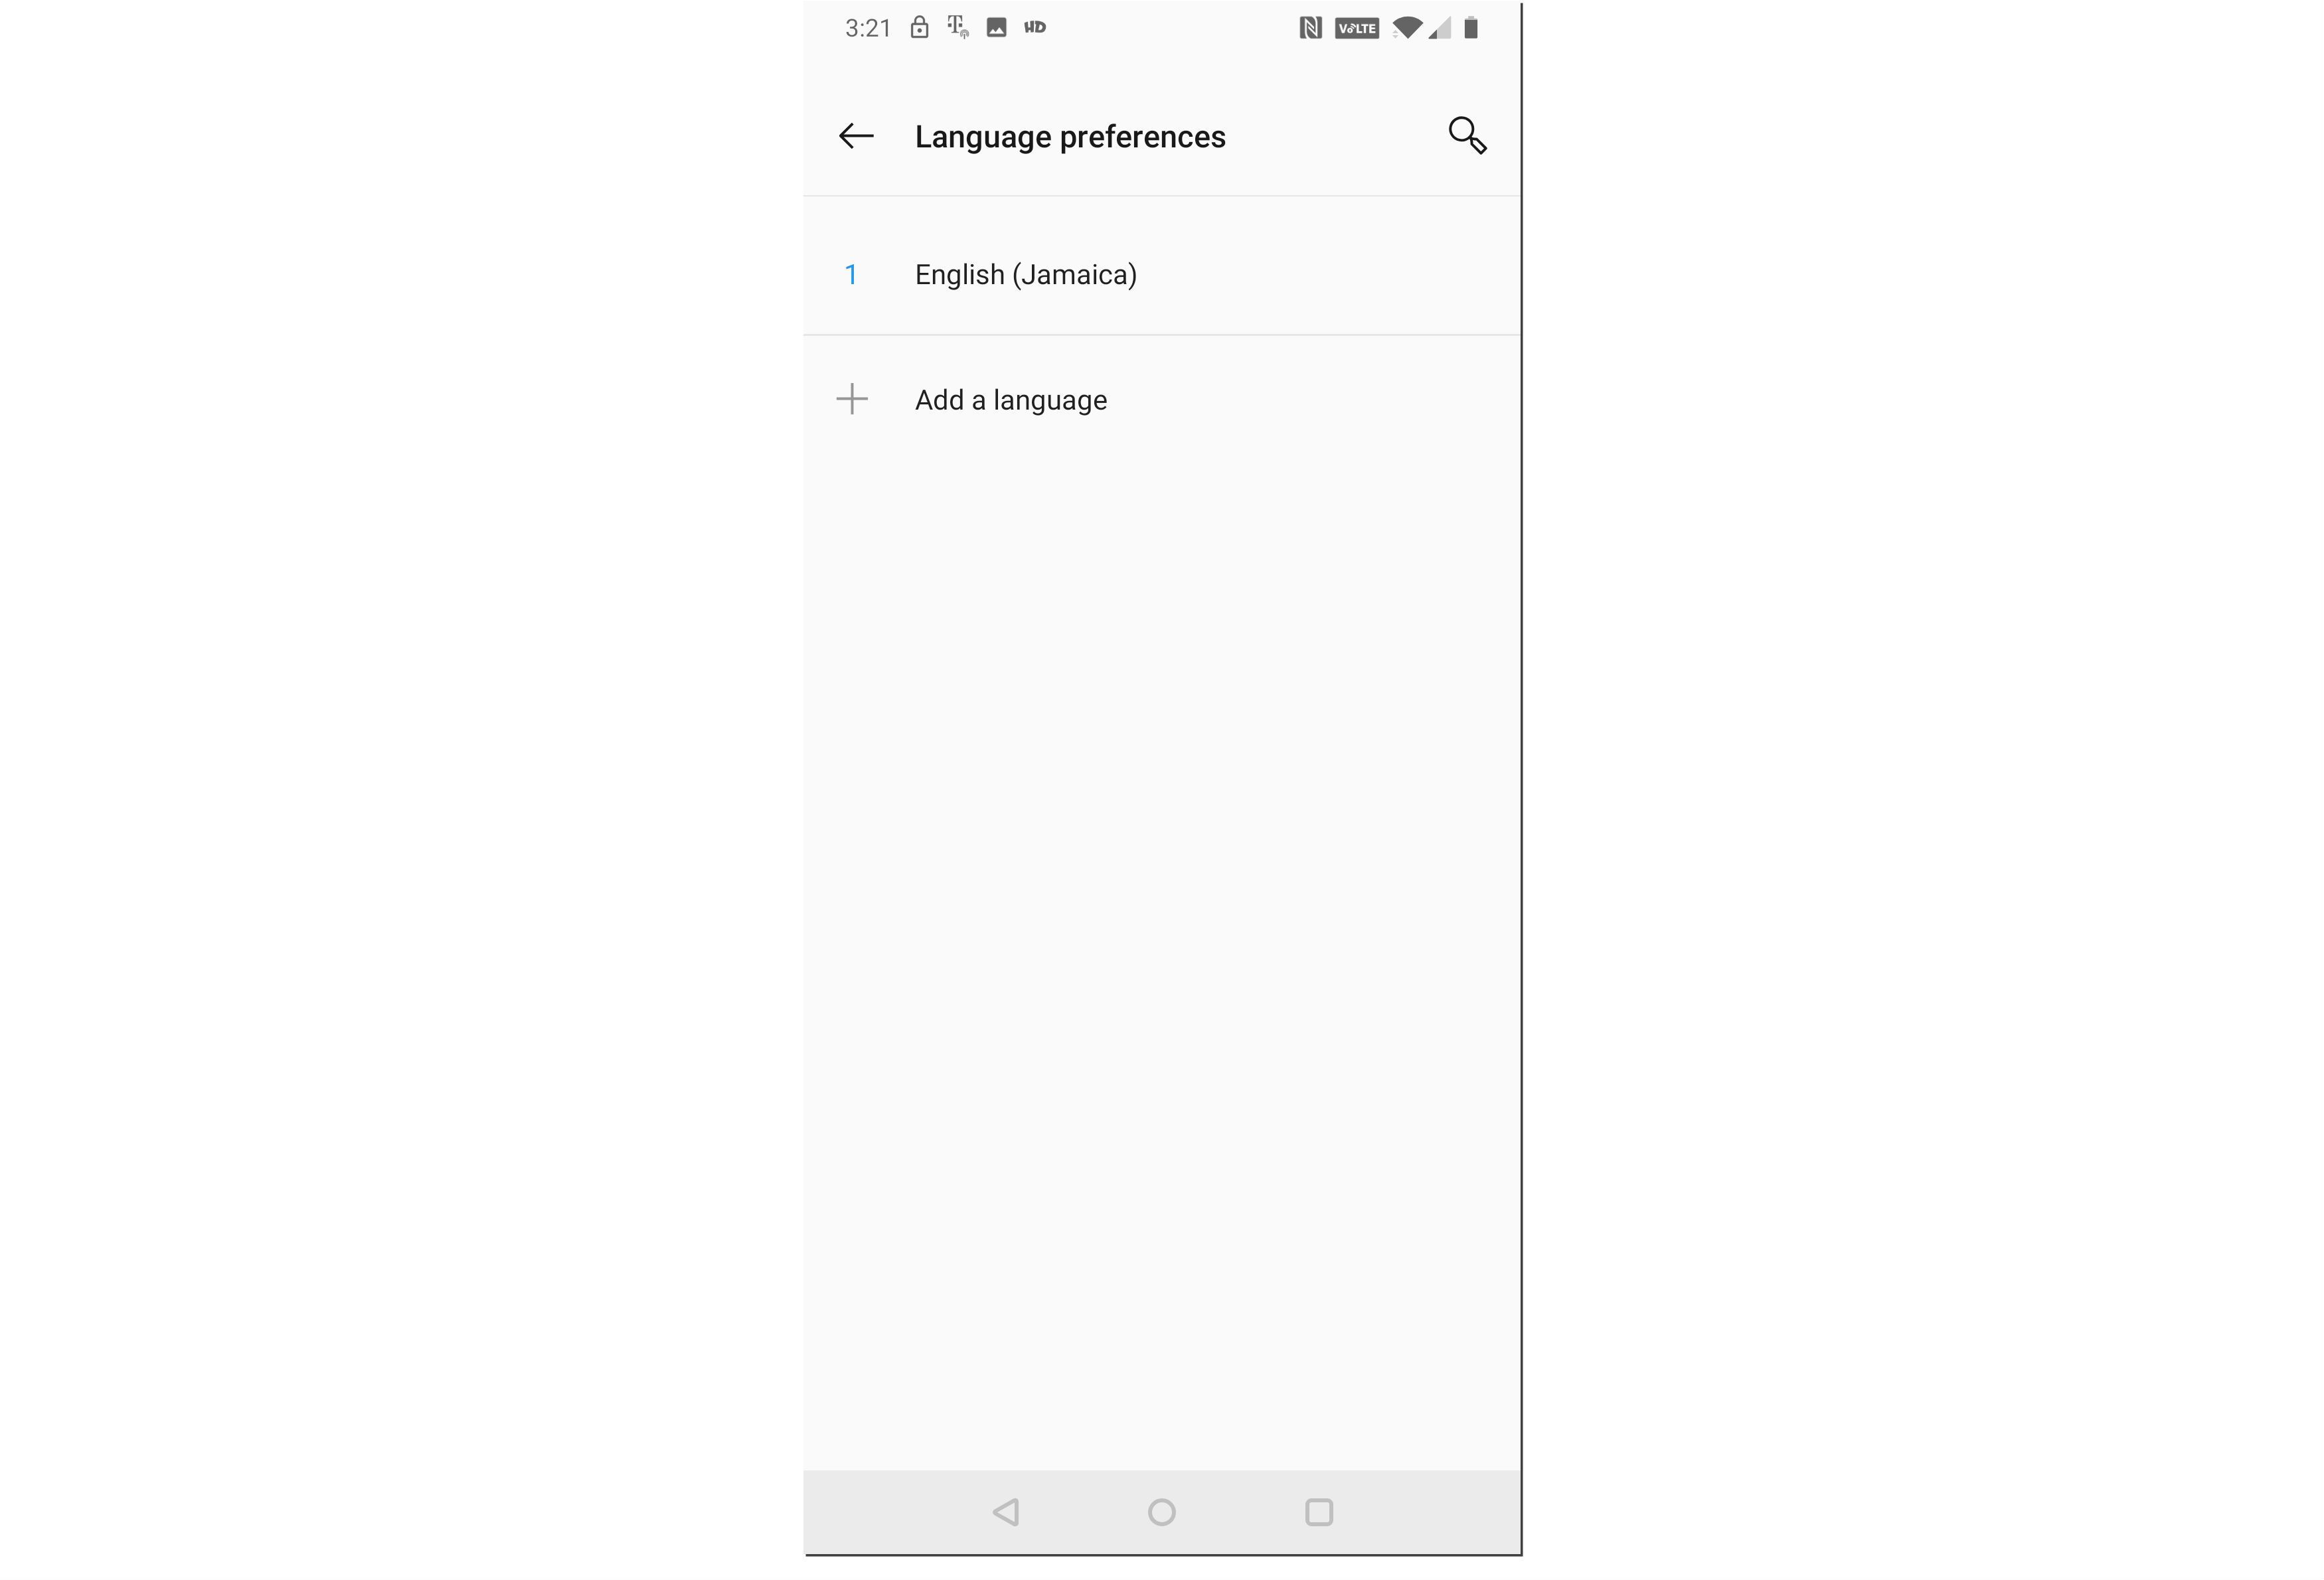 Скриншот экрана настроек языка Android.